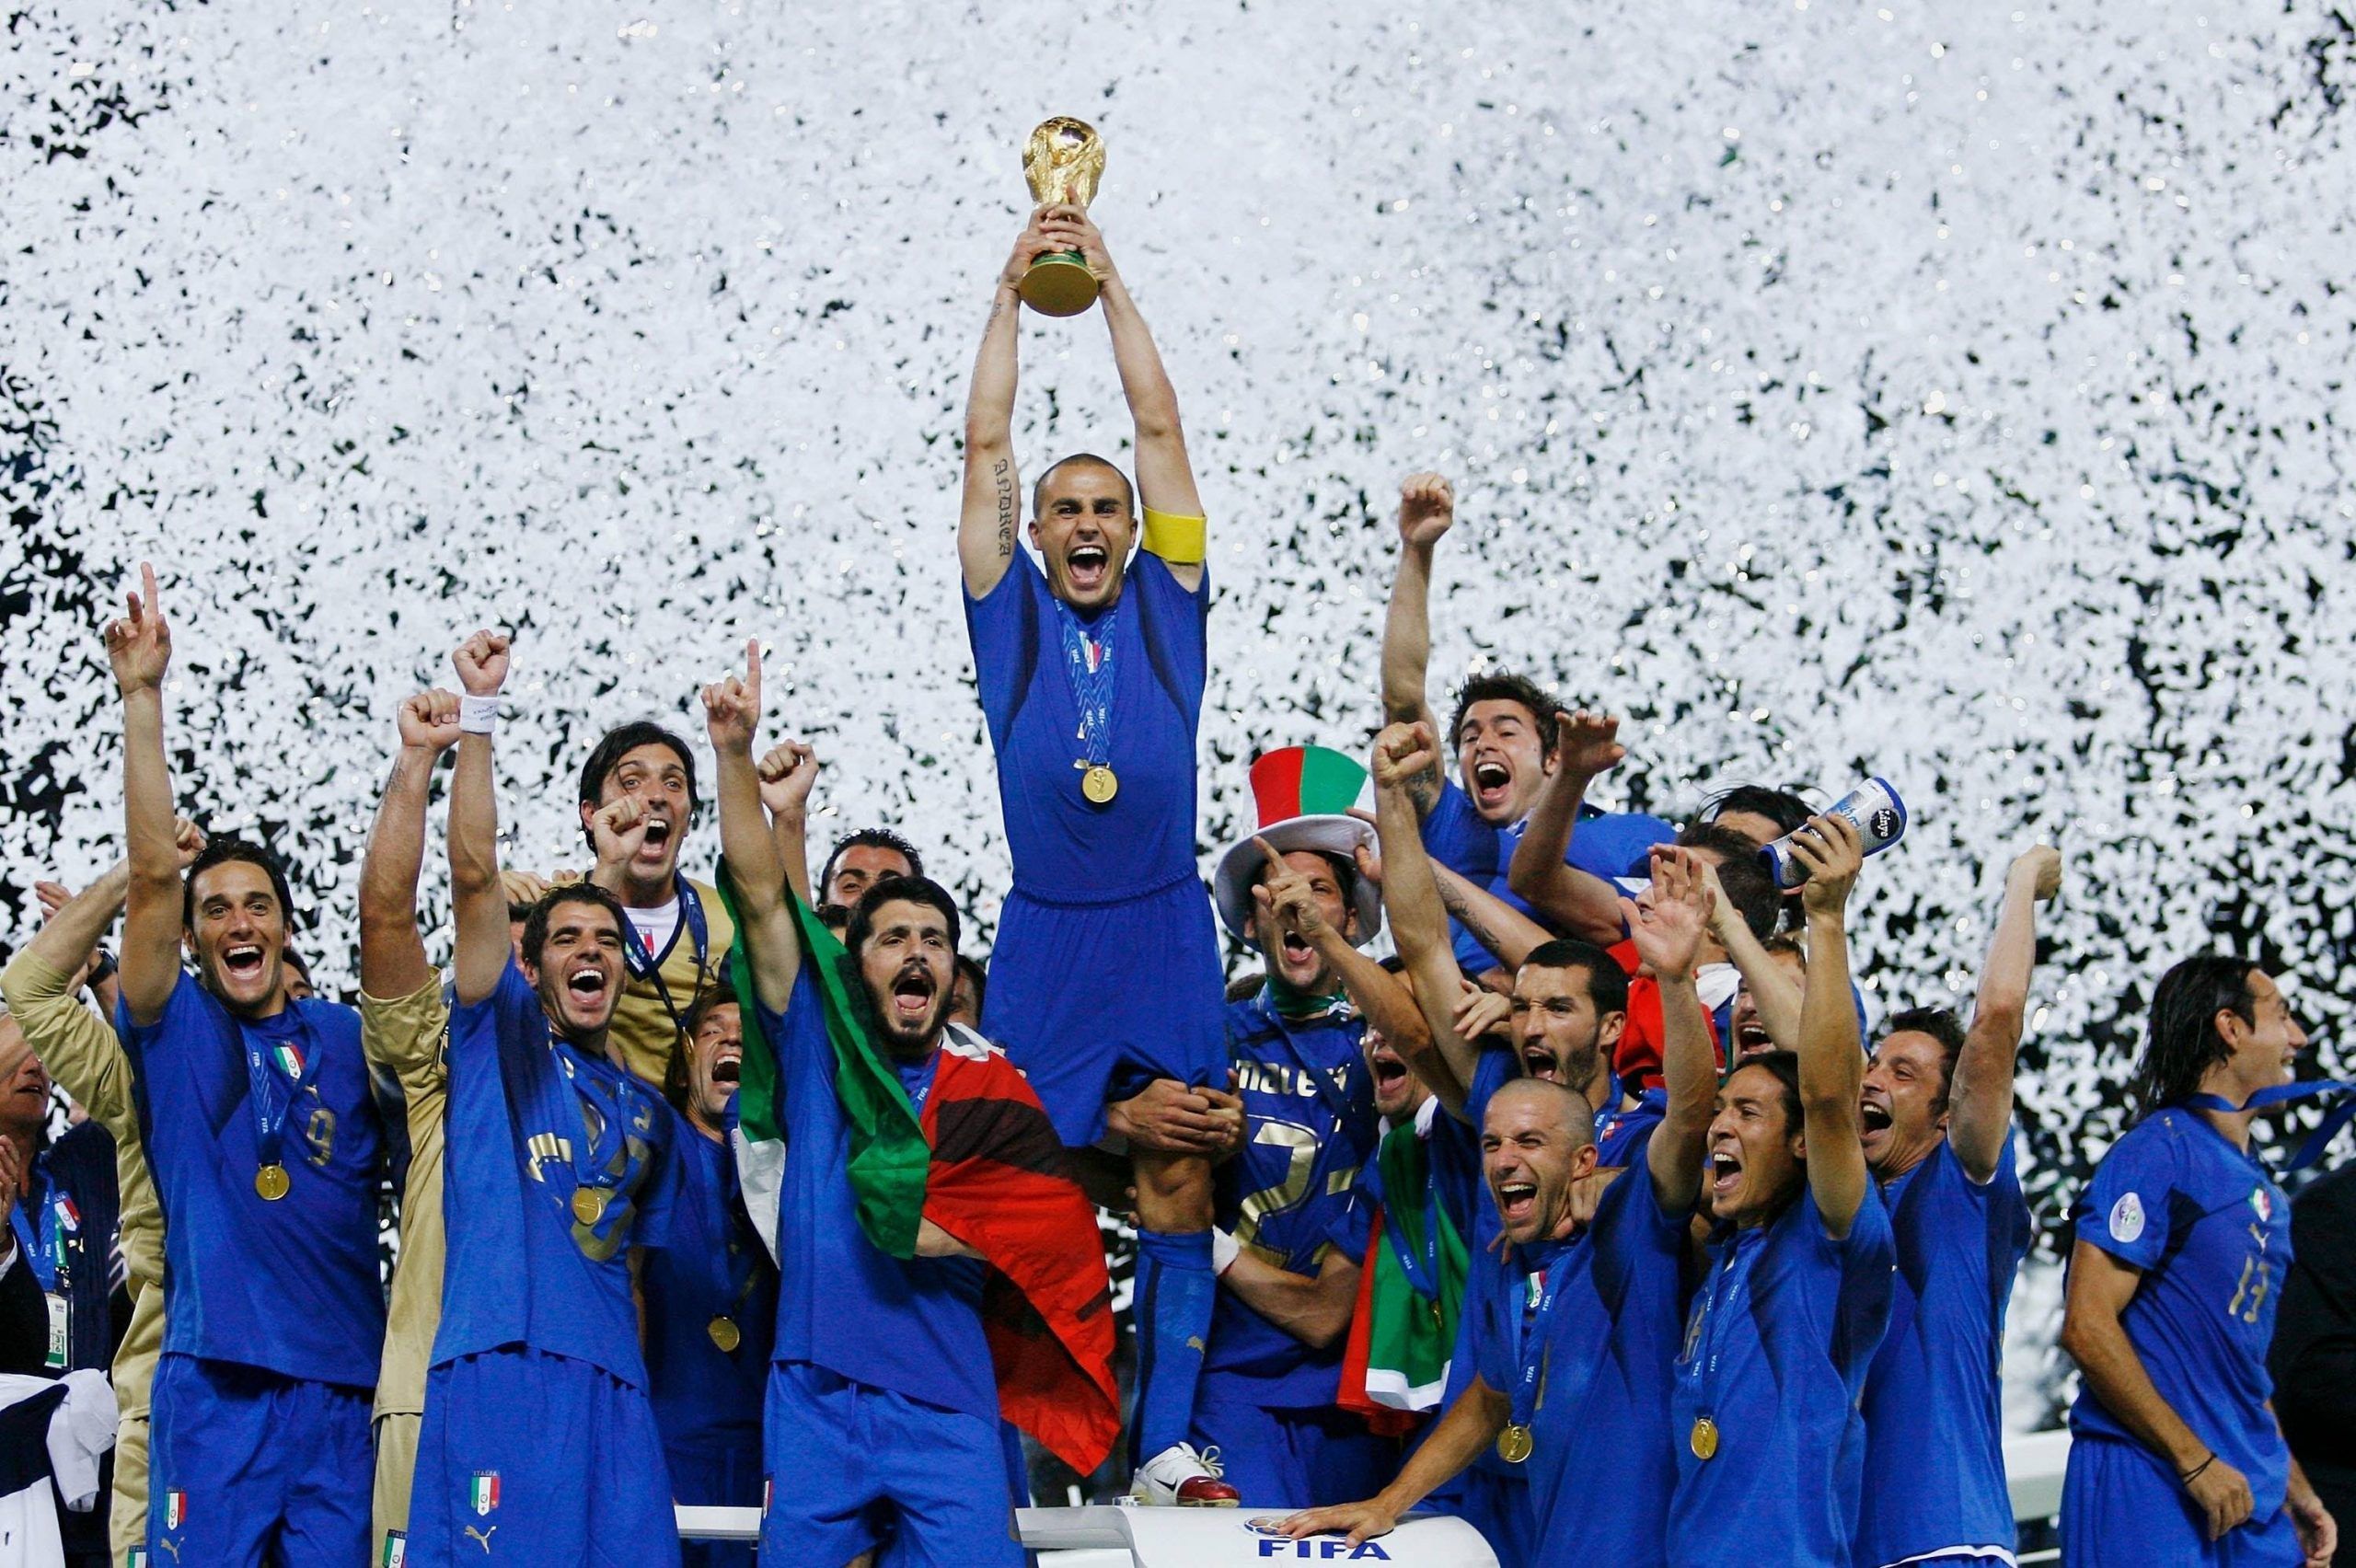 Italia Campione del Mondo 2006: 12 anni dall’impresa di Berlino